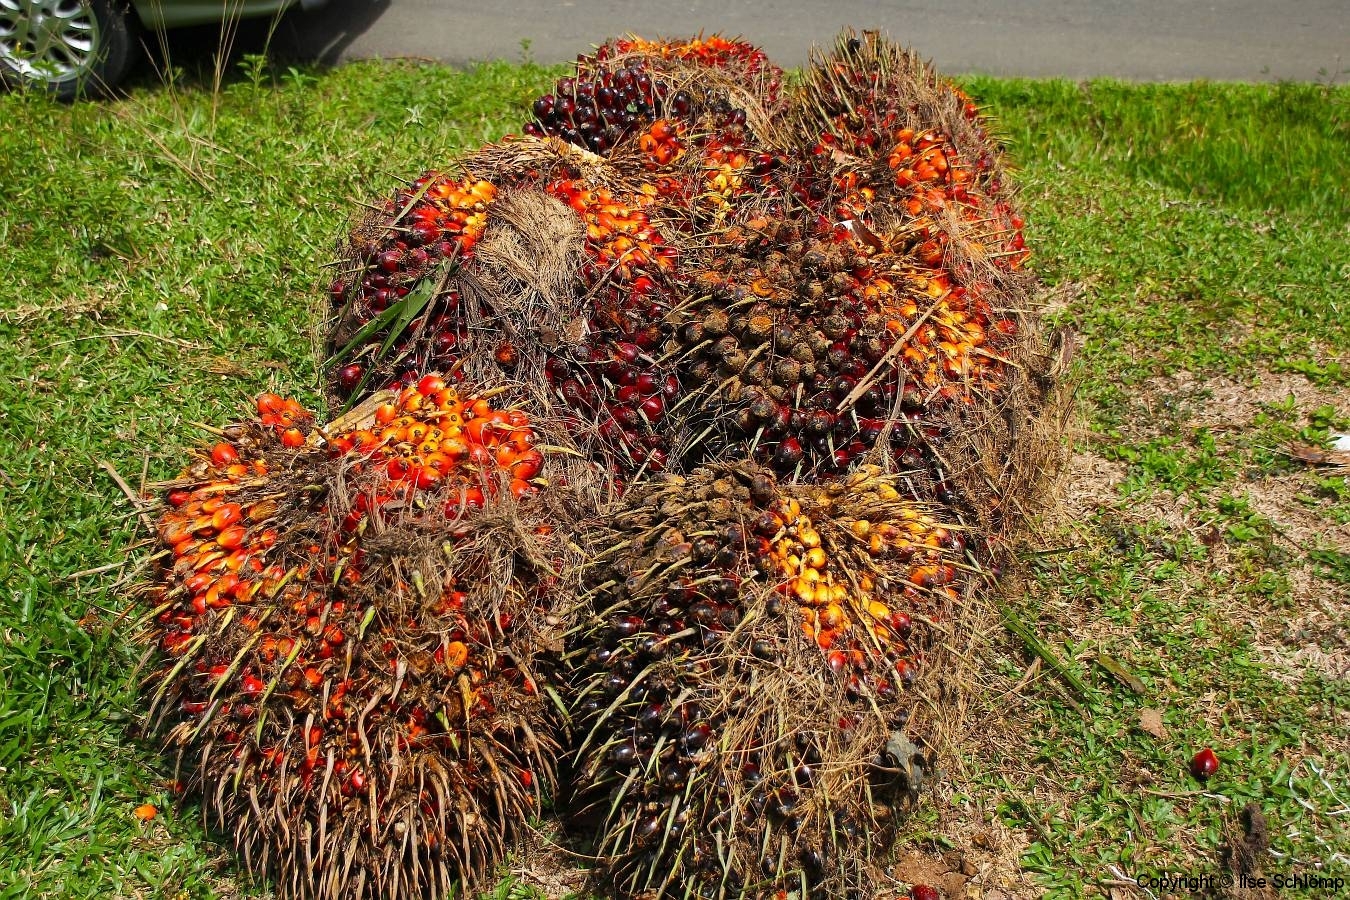 Sumatra, Palmölfrucht